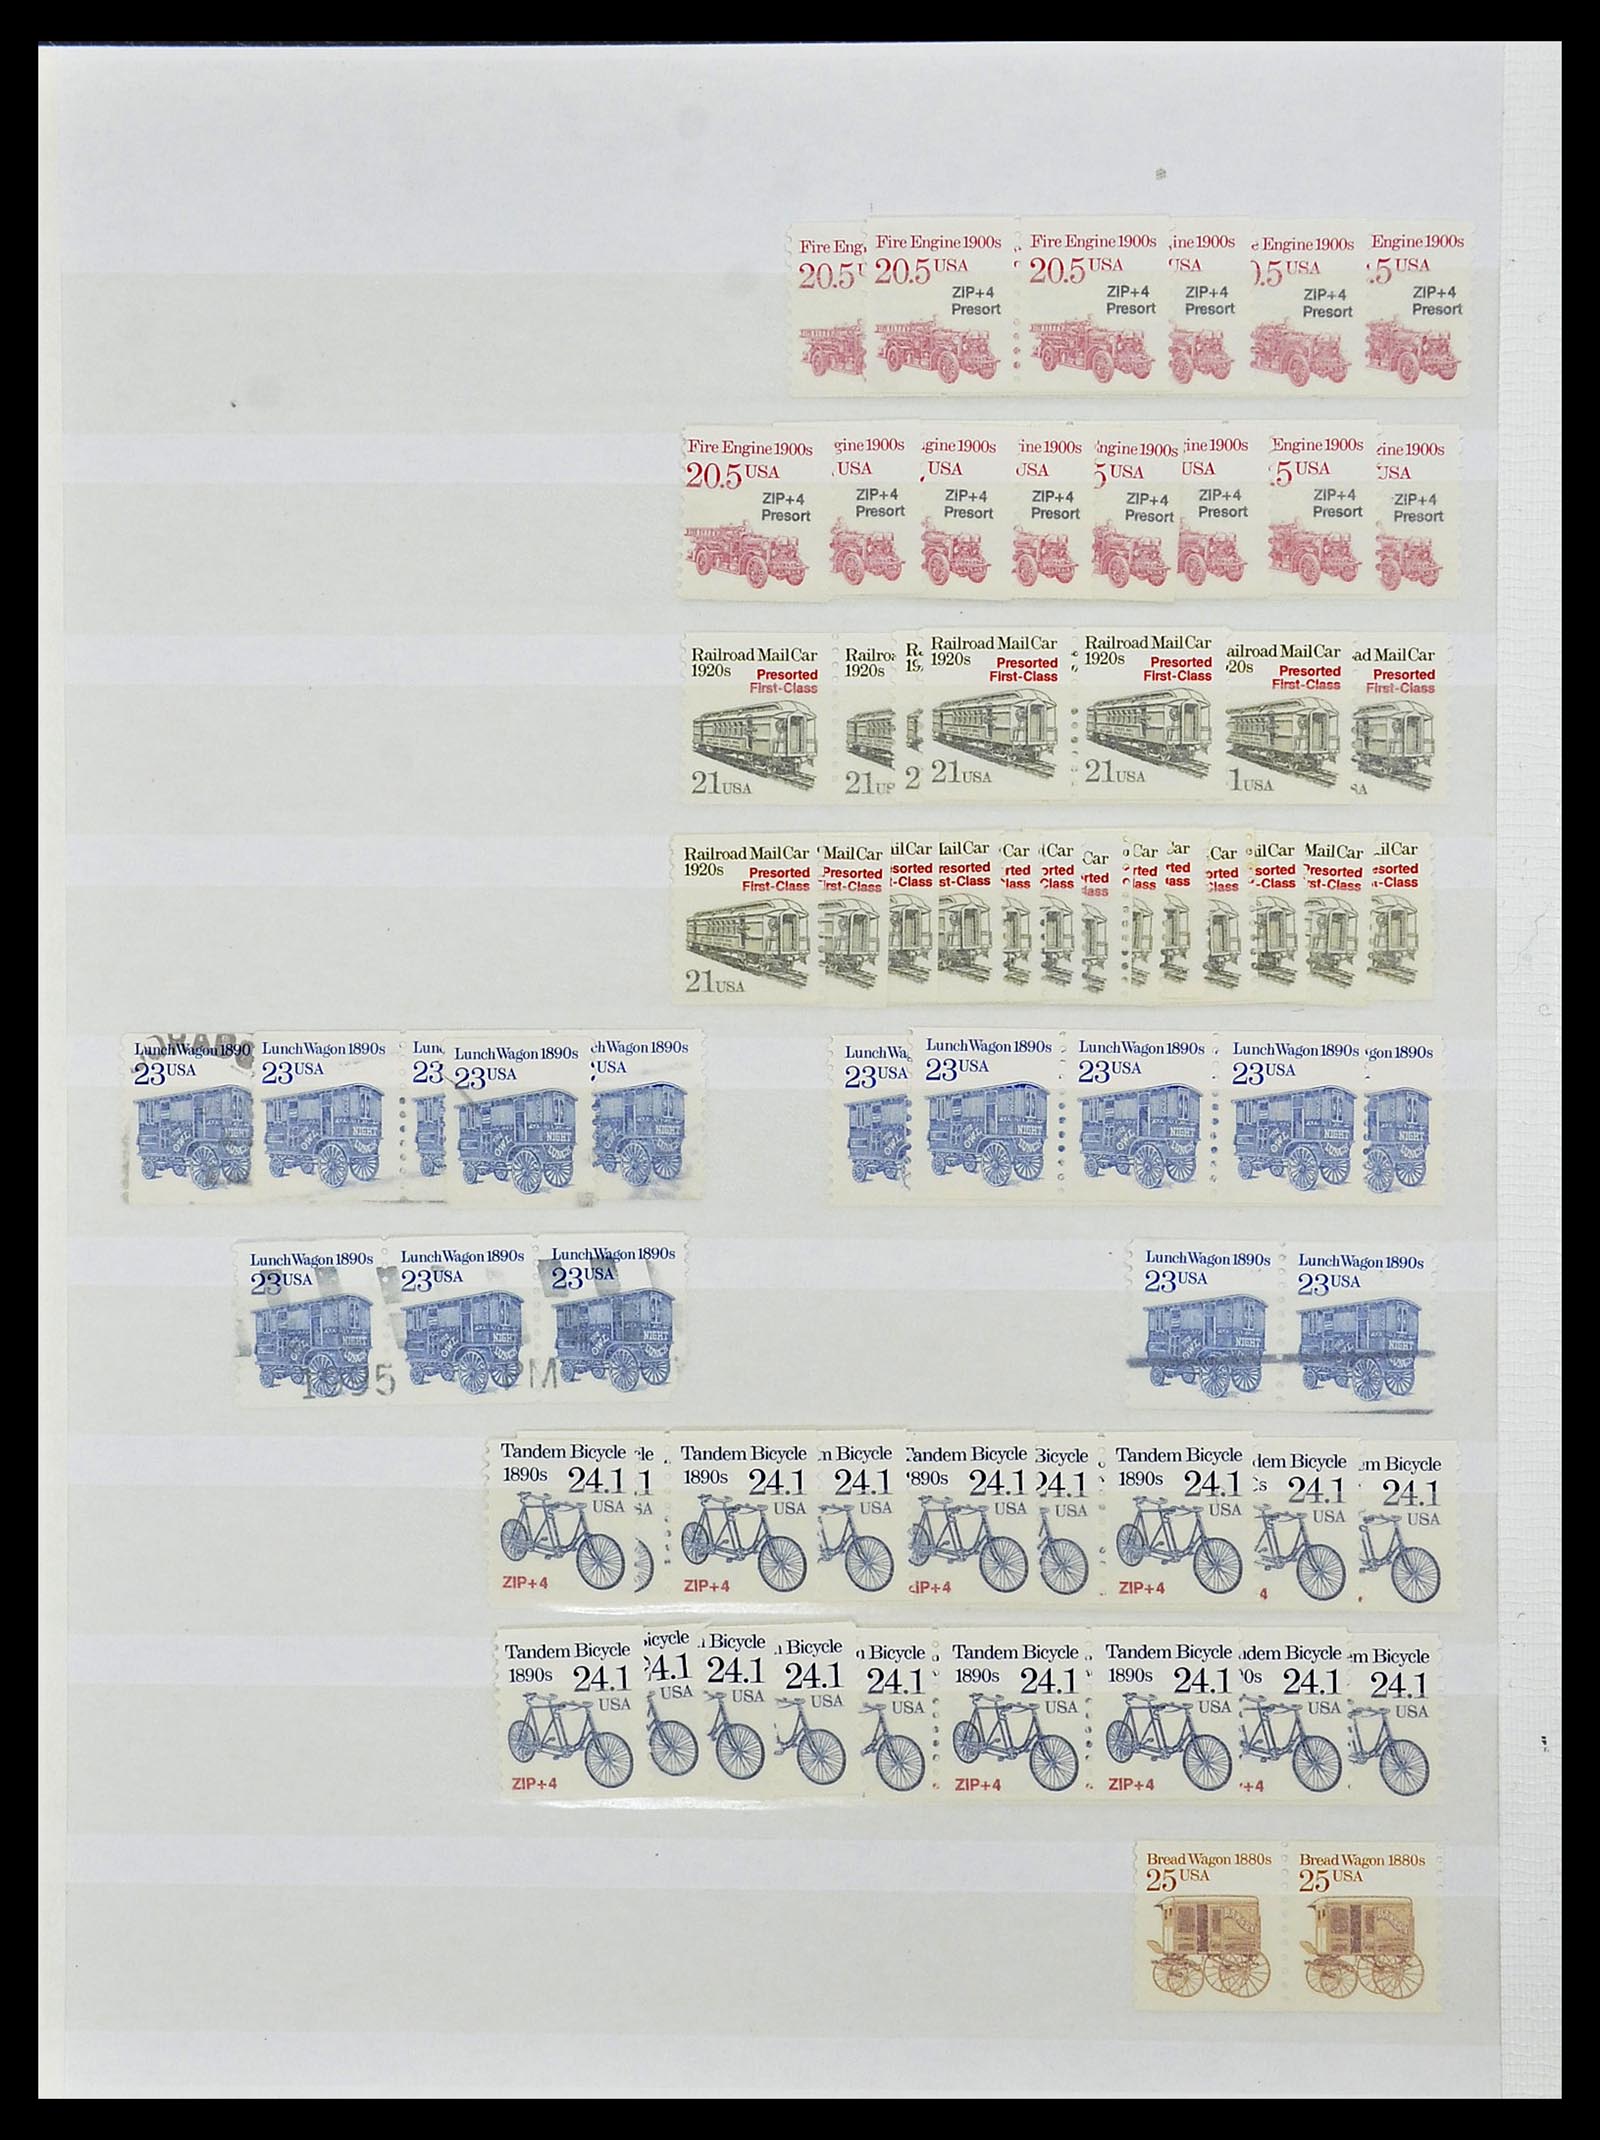 34513 053 - Stamp Collection 34513 USA 1945-1995.